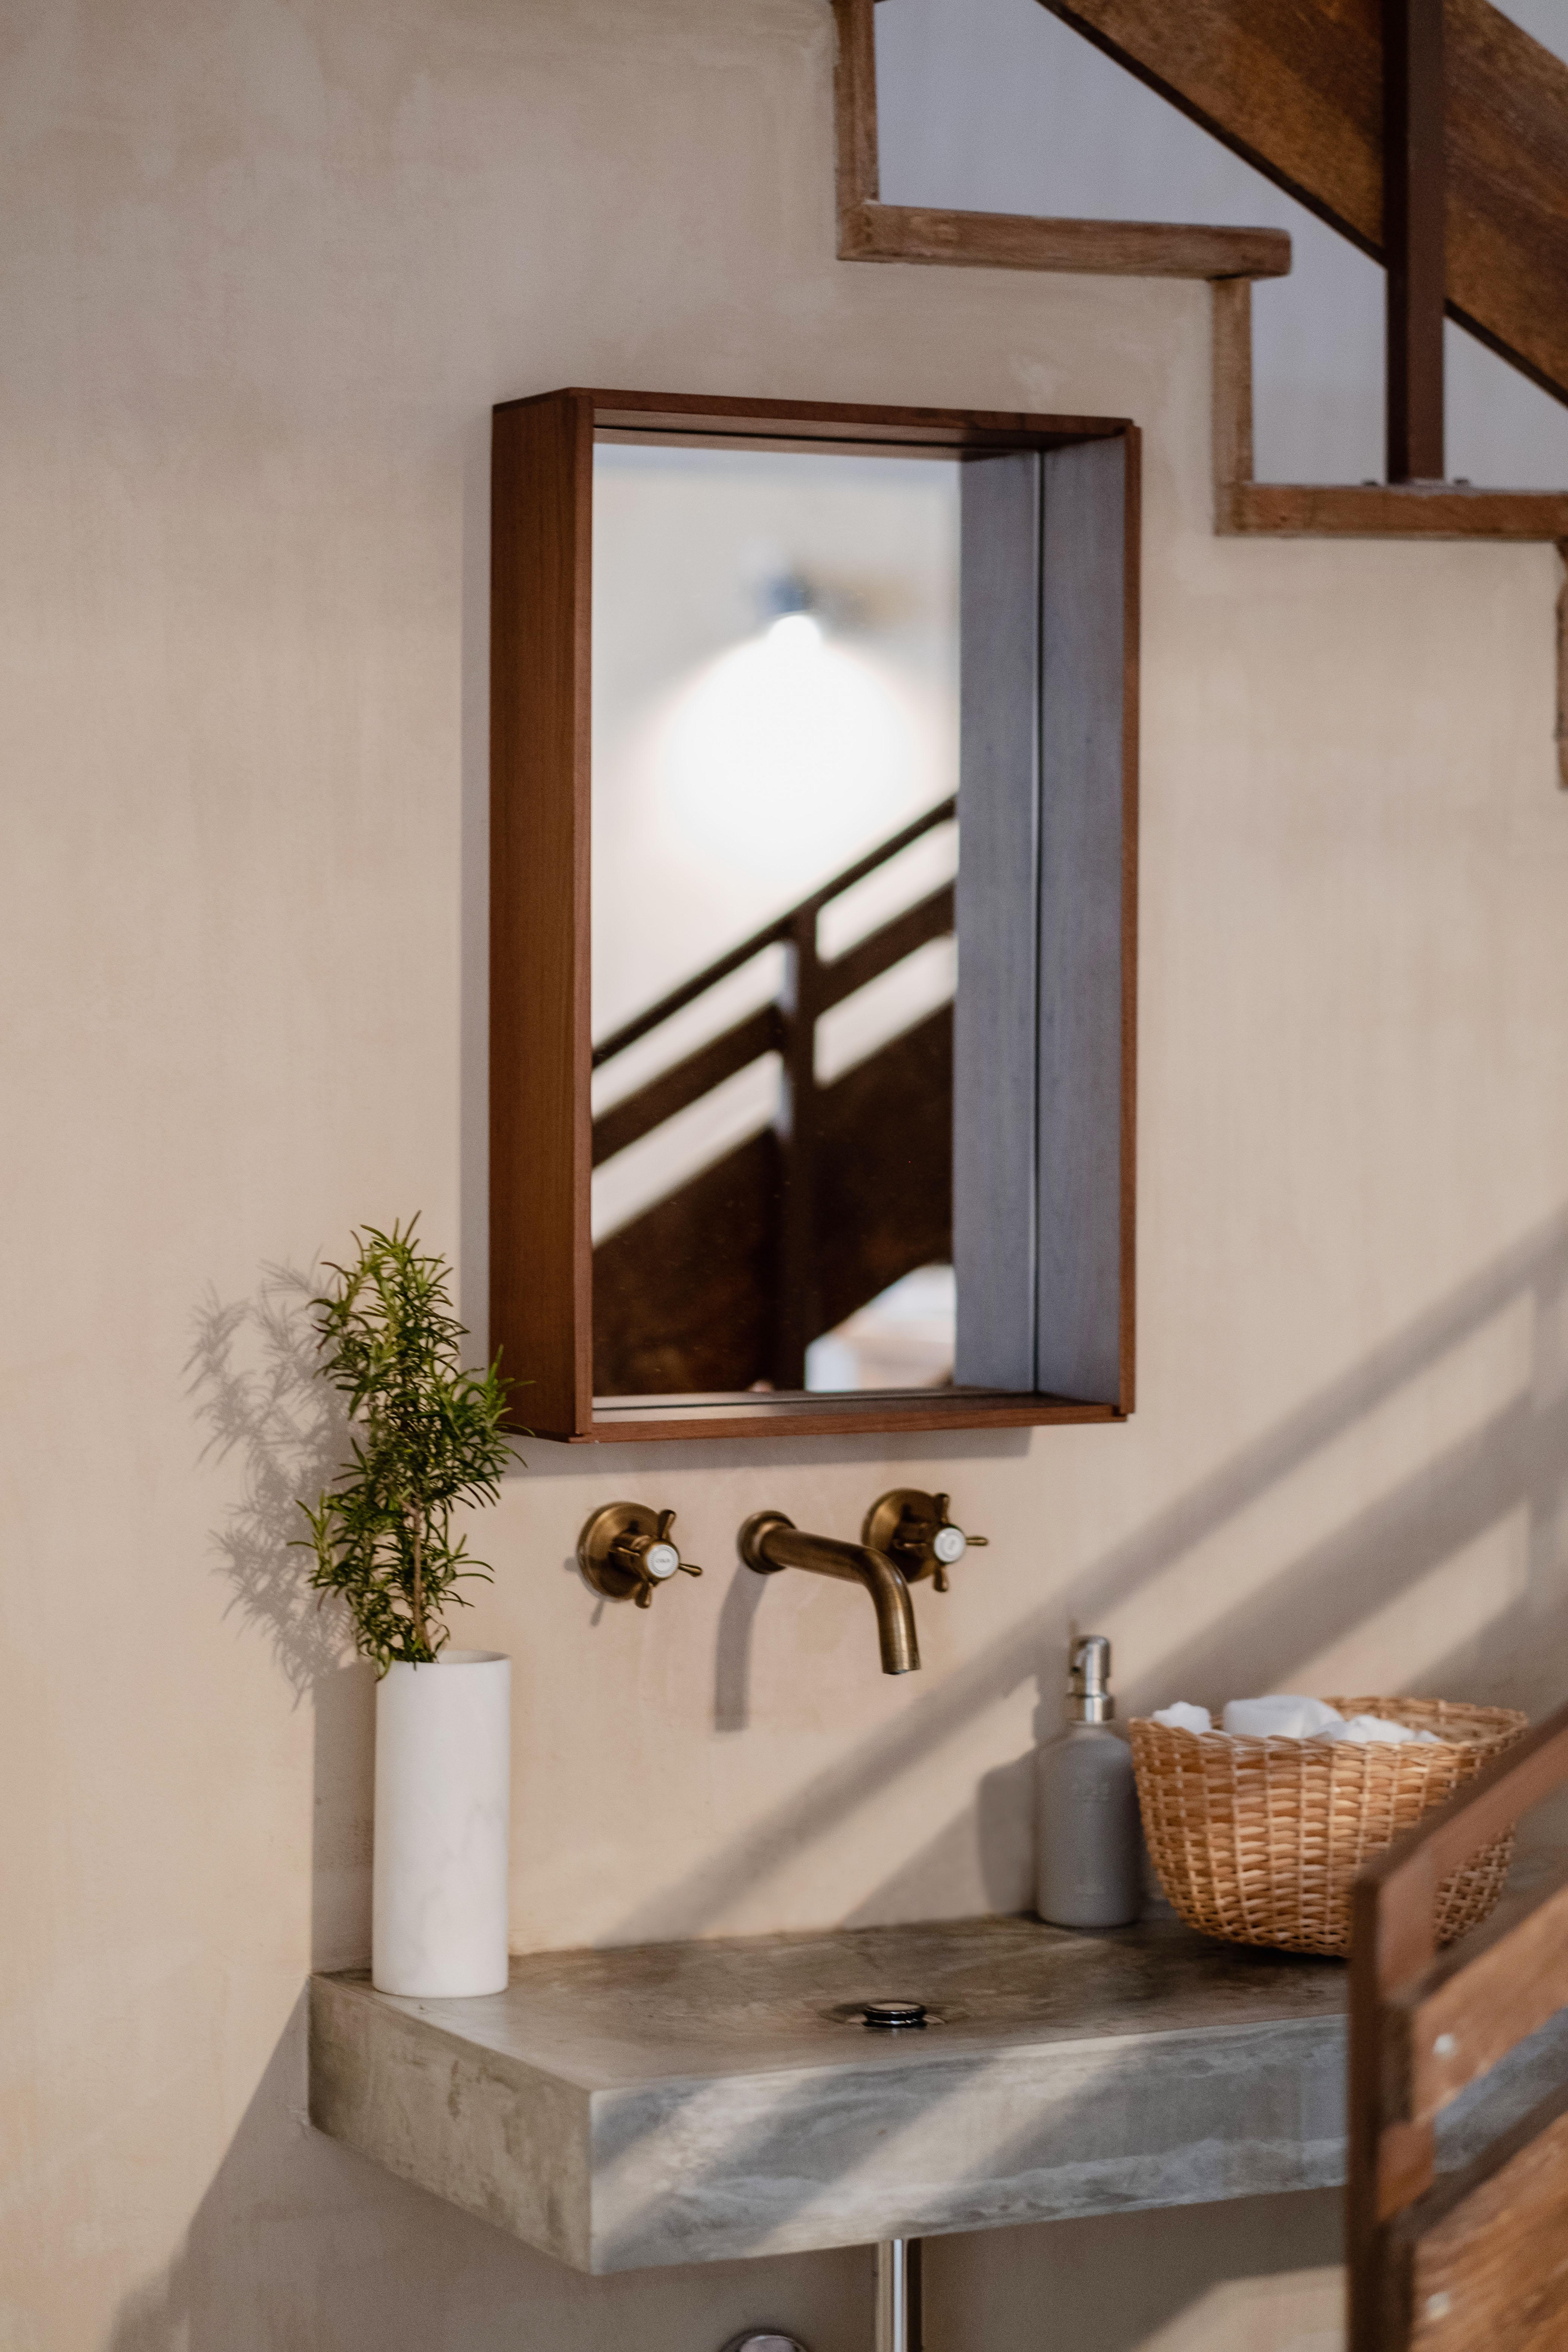 Campo est un miroir polyvalent qui ouvre une fenêtre sur des temps simples. Un design minimal et honnête qui offre une grande variété d'utilisations.

Inspiré des caisses en bois traditionnelles utilisées sur les marchés au début des années 50, le